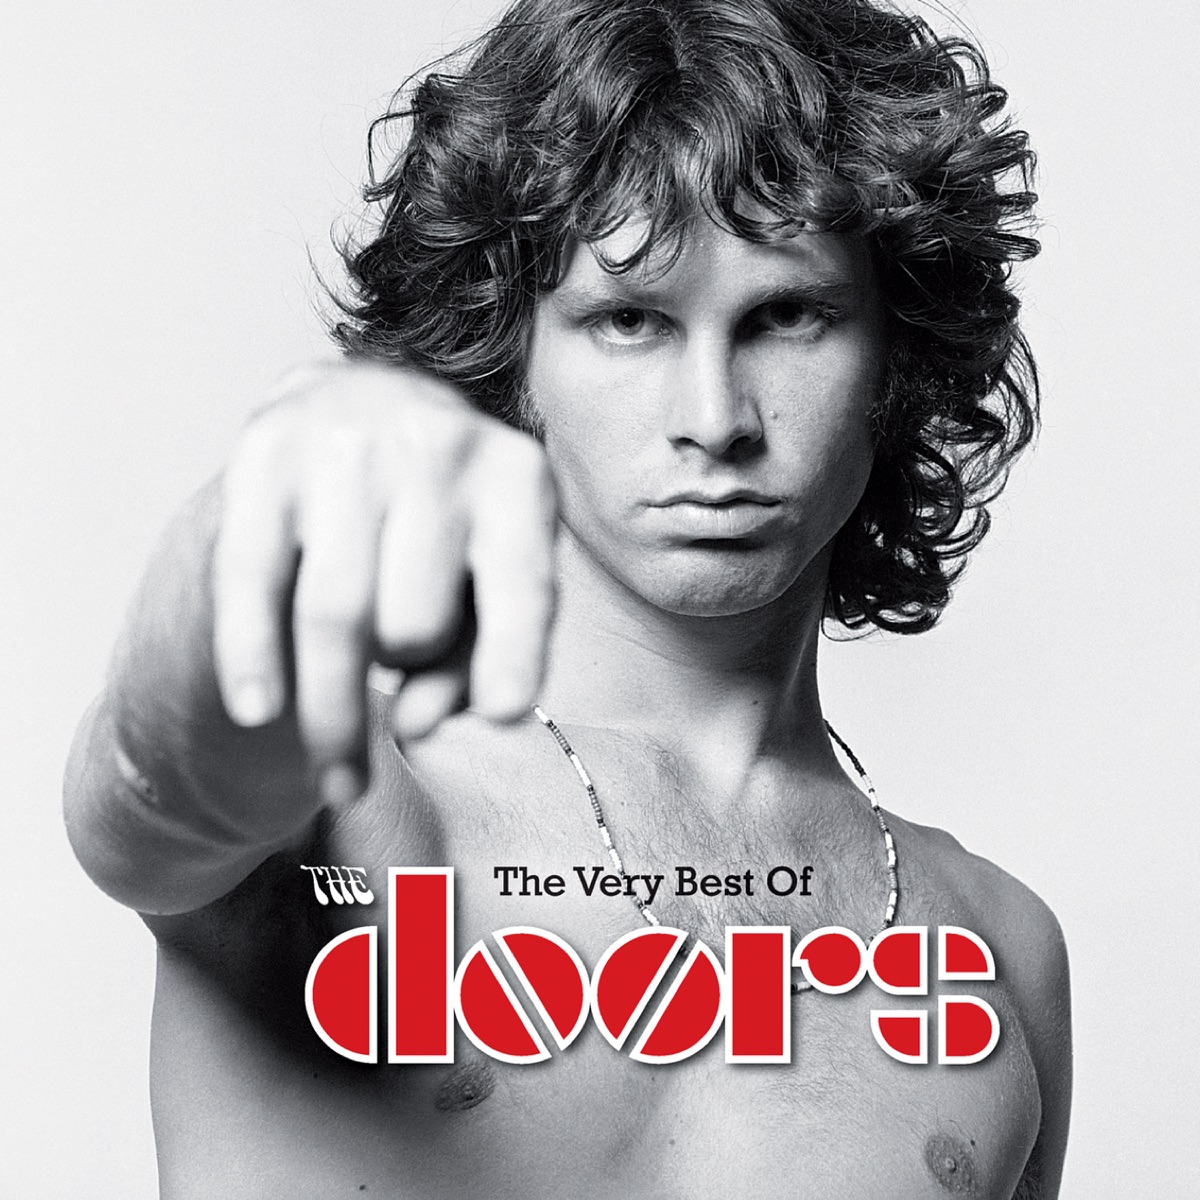 The Doors – Light My Fire: слушать онлайн или скачать mp3 песню